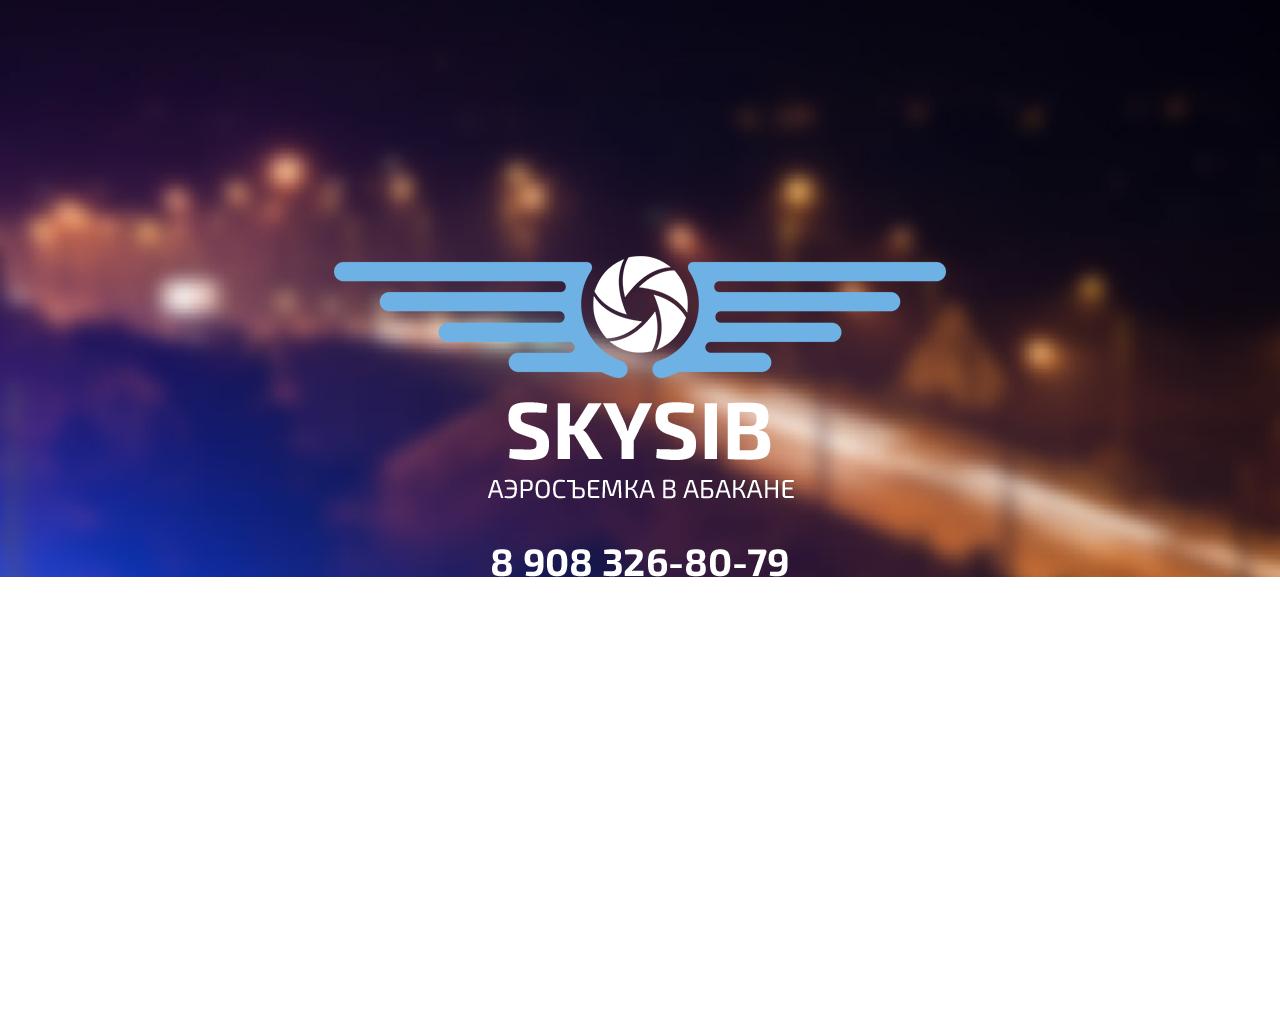 Изображение сайта sky-sib.ru в разрешении 1280x1024